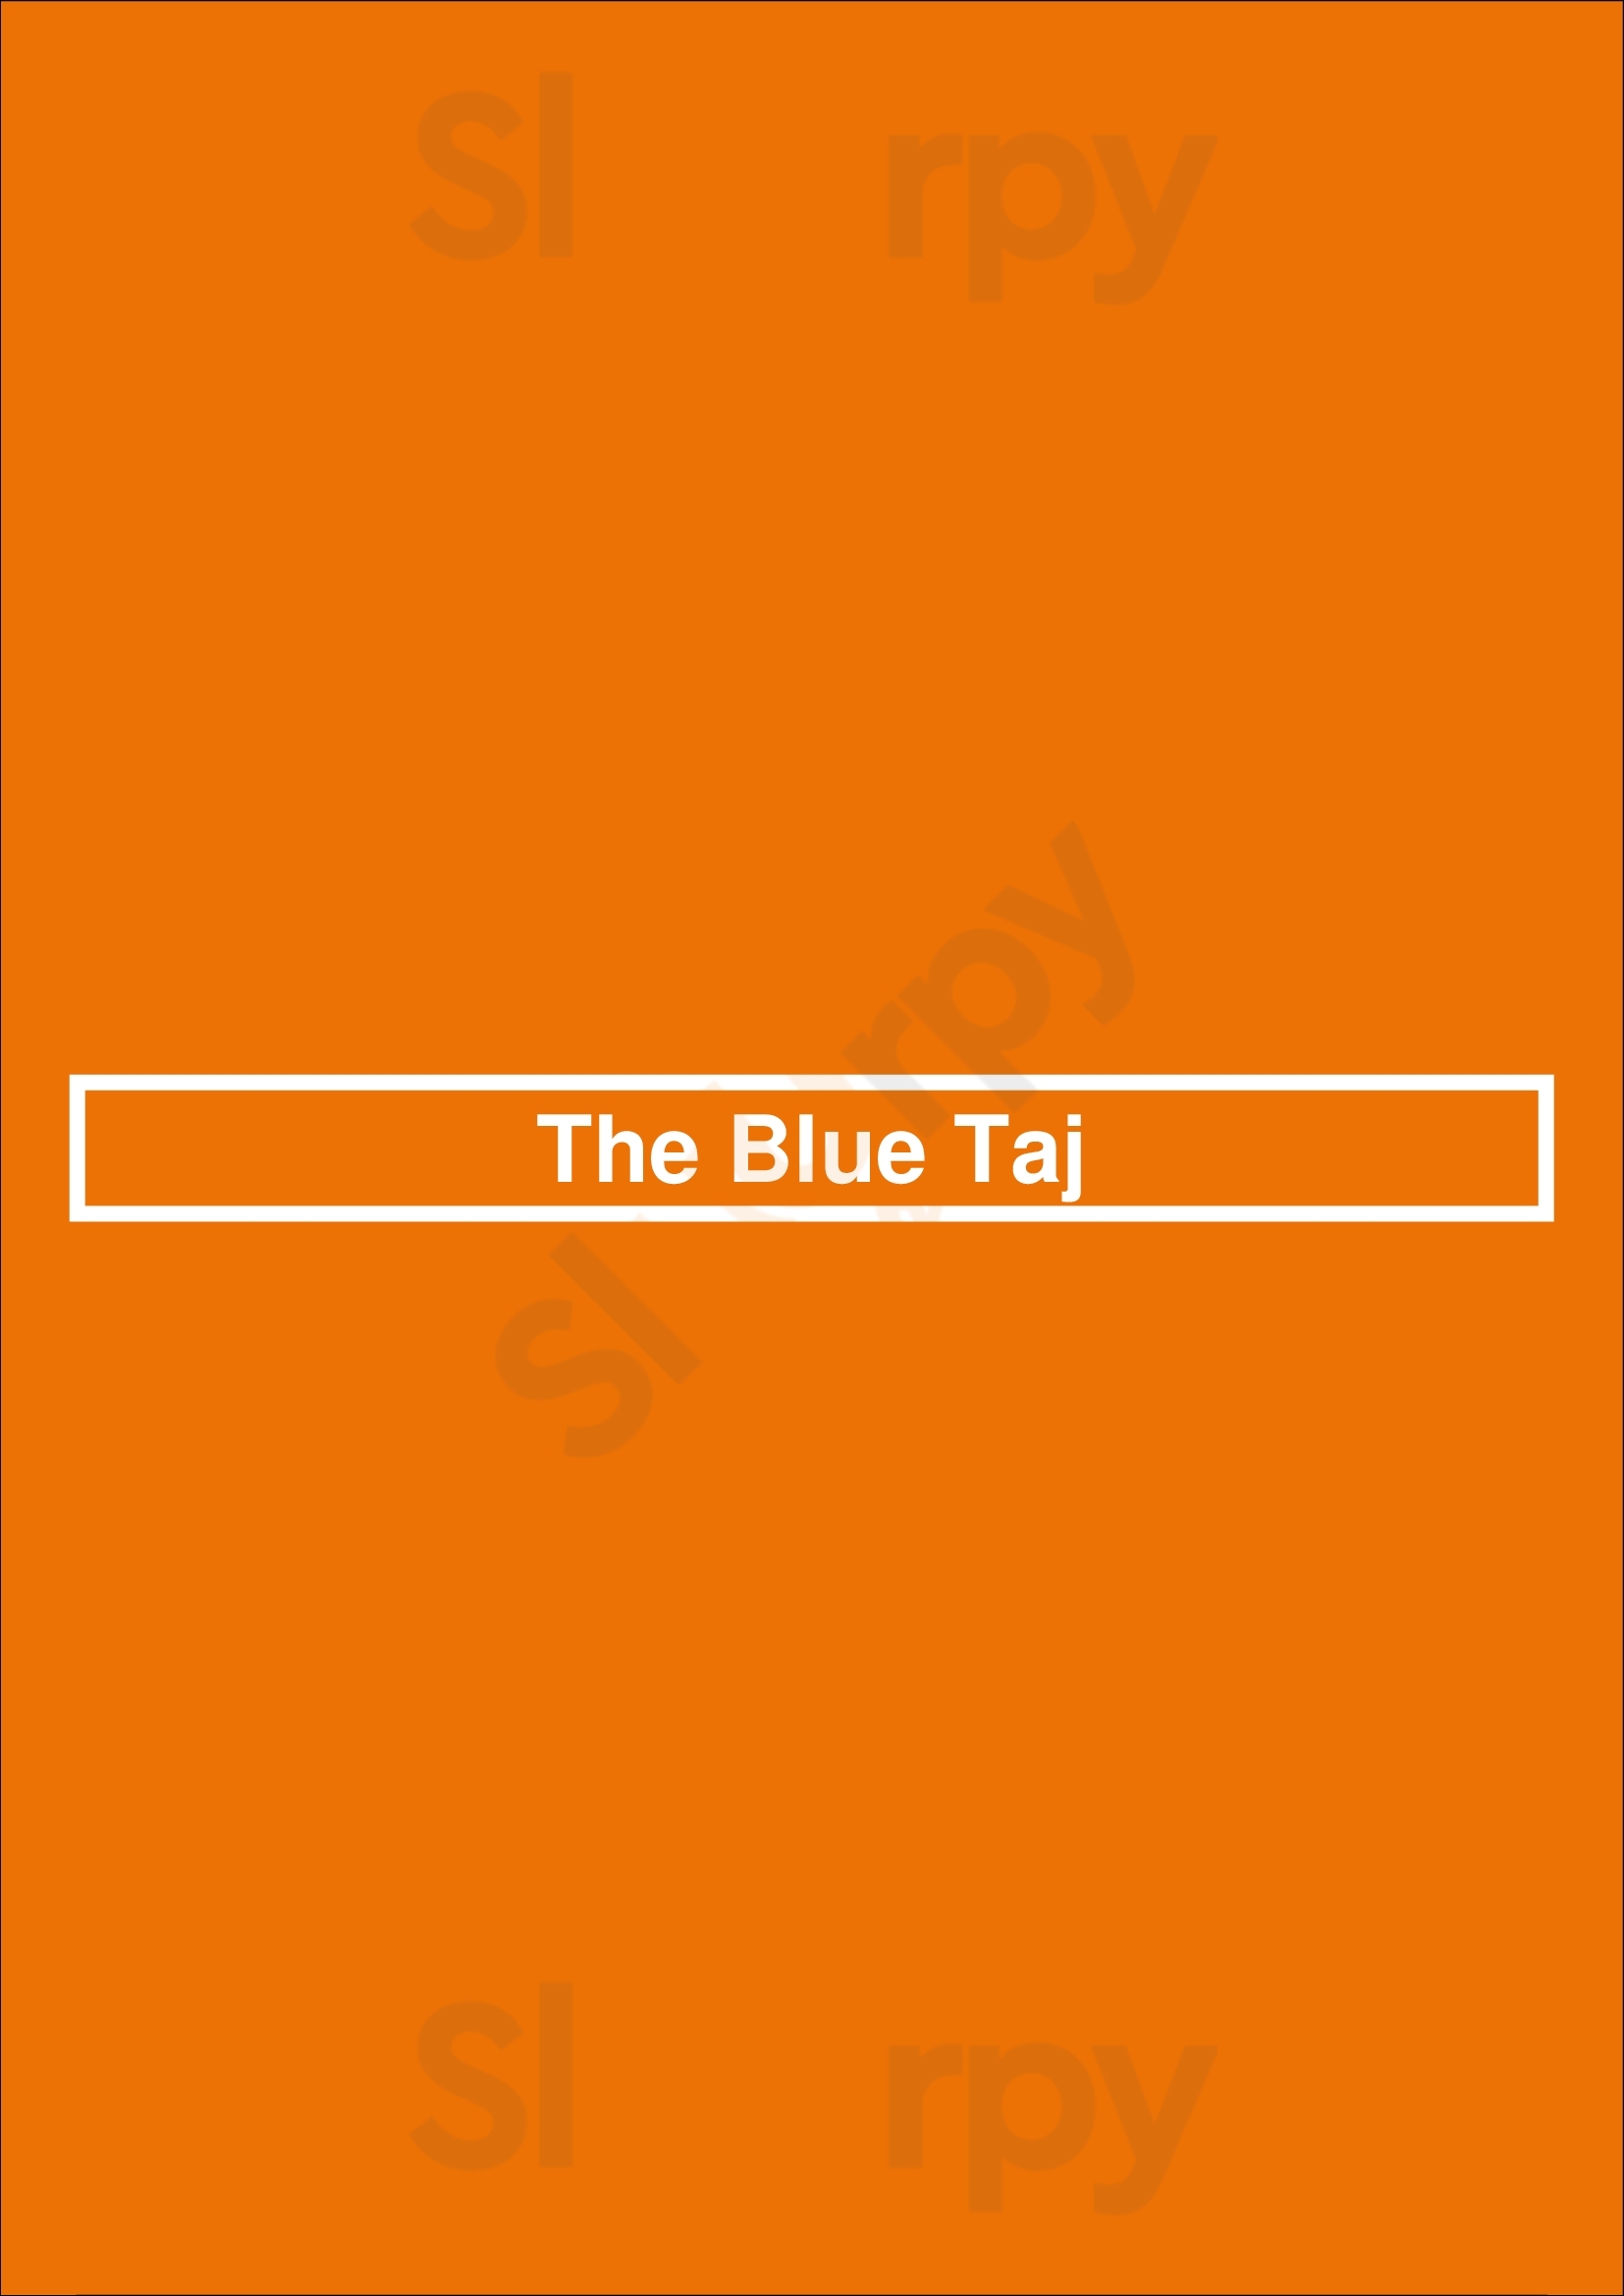 The Blue Taj Charlotte Menu - 1